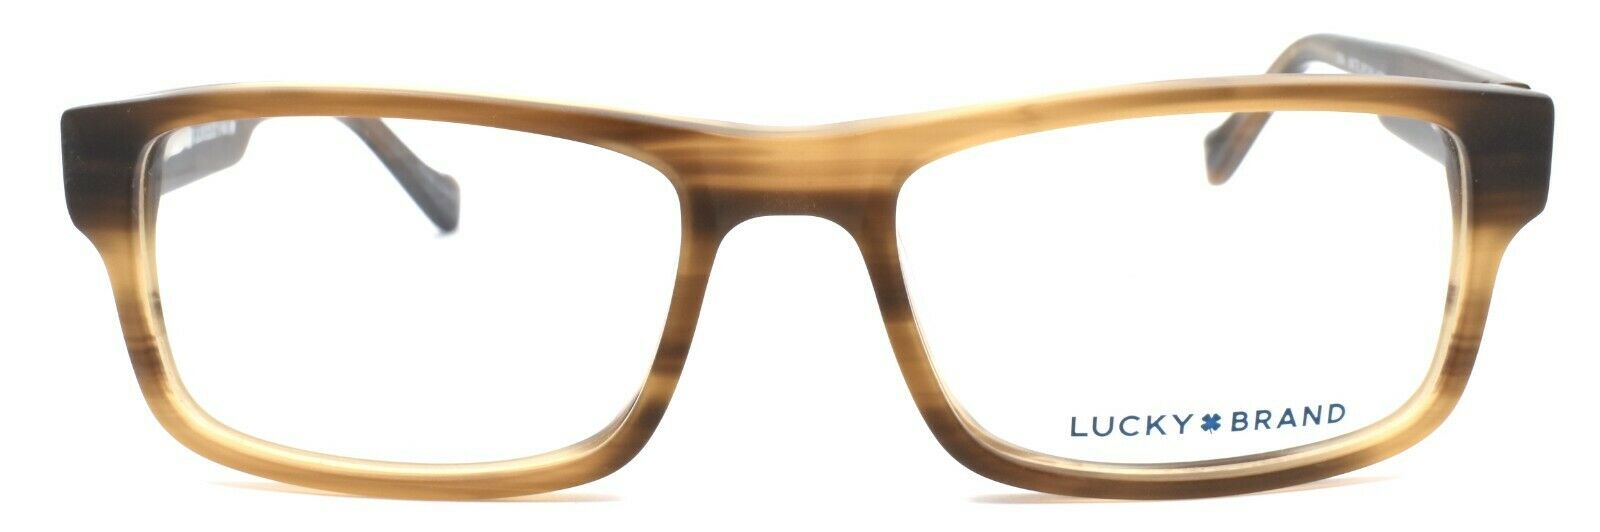 2-LUCKY BRAND D804 Kids Boys Eyeglasses Frames 49-16-130 Matte Brown Horn-751286295252-IKSpecs